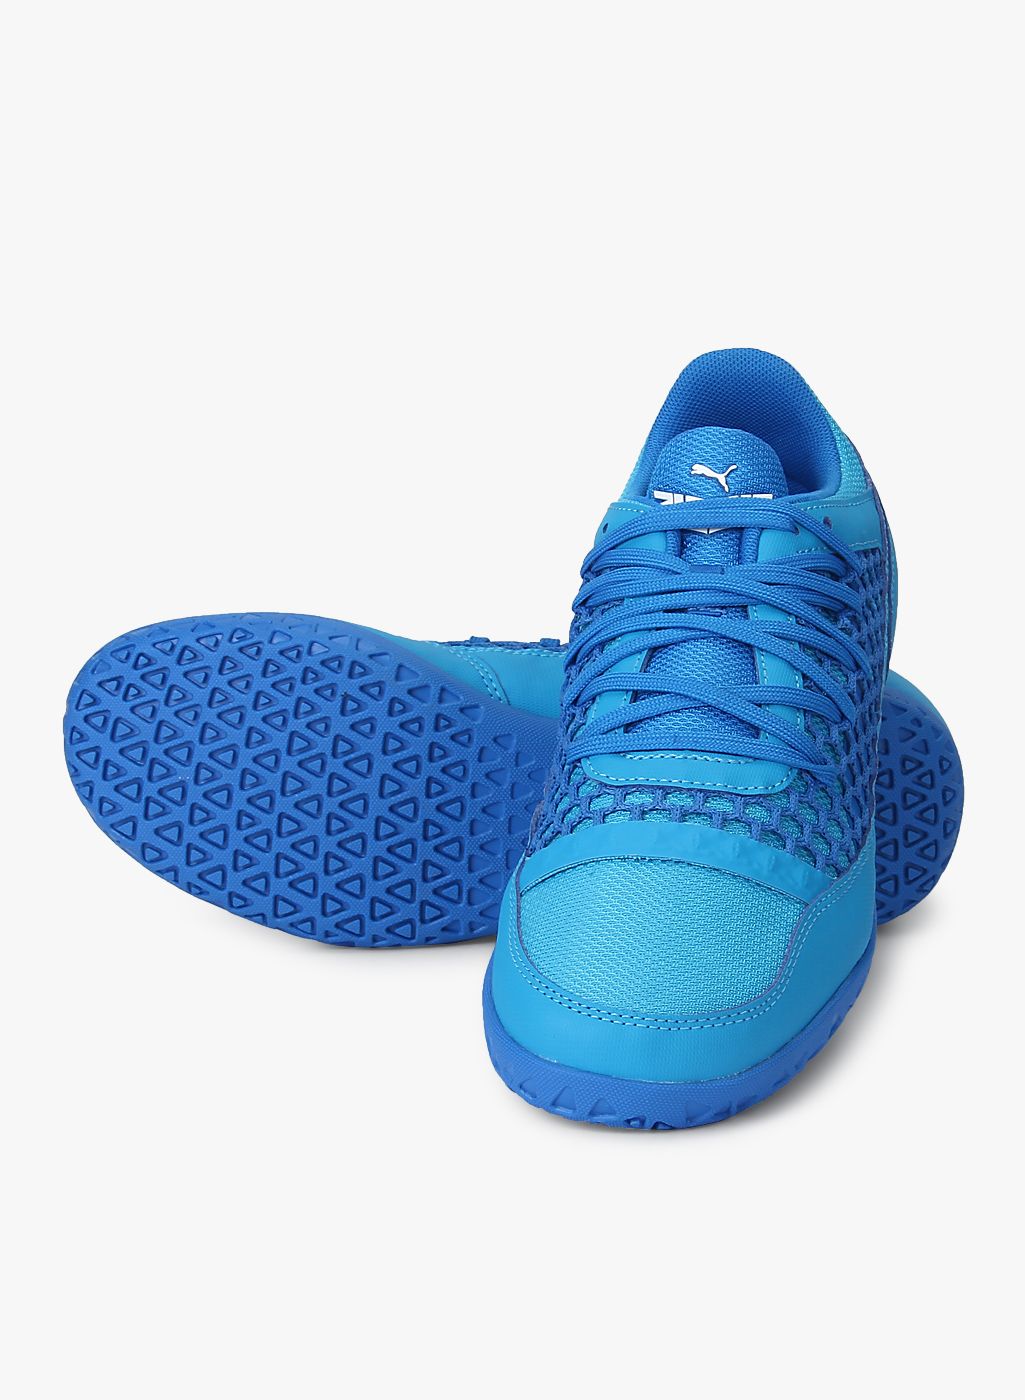 Botines Nike Hypervenom Azul Y Naranja Deportes y Fitness